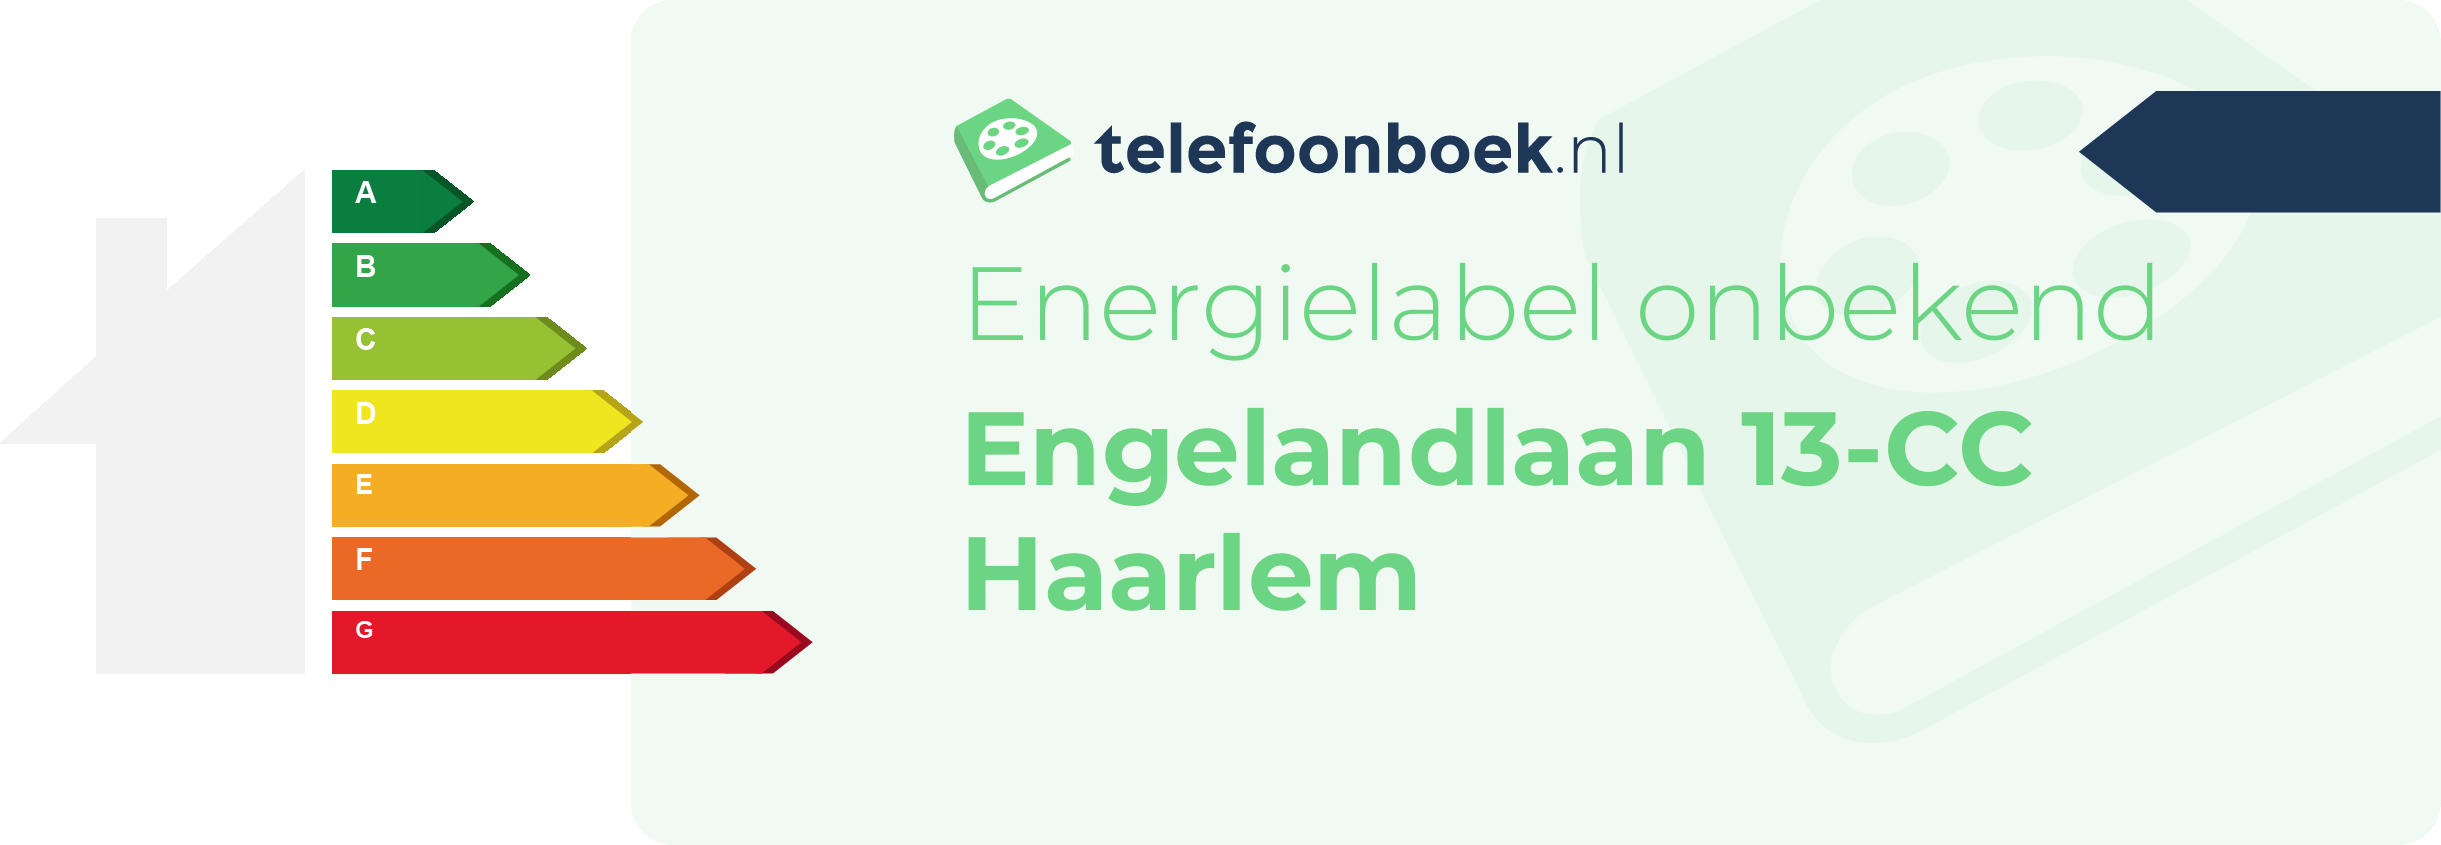 Energielabel Engelandlaan 13-CC Haarlem